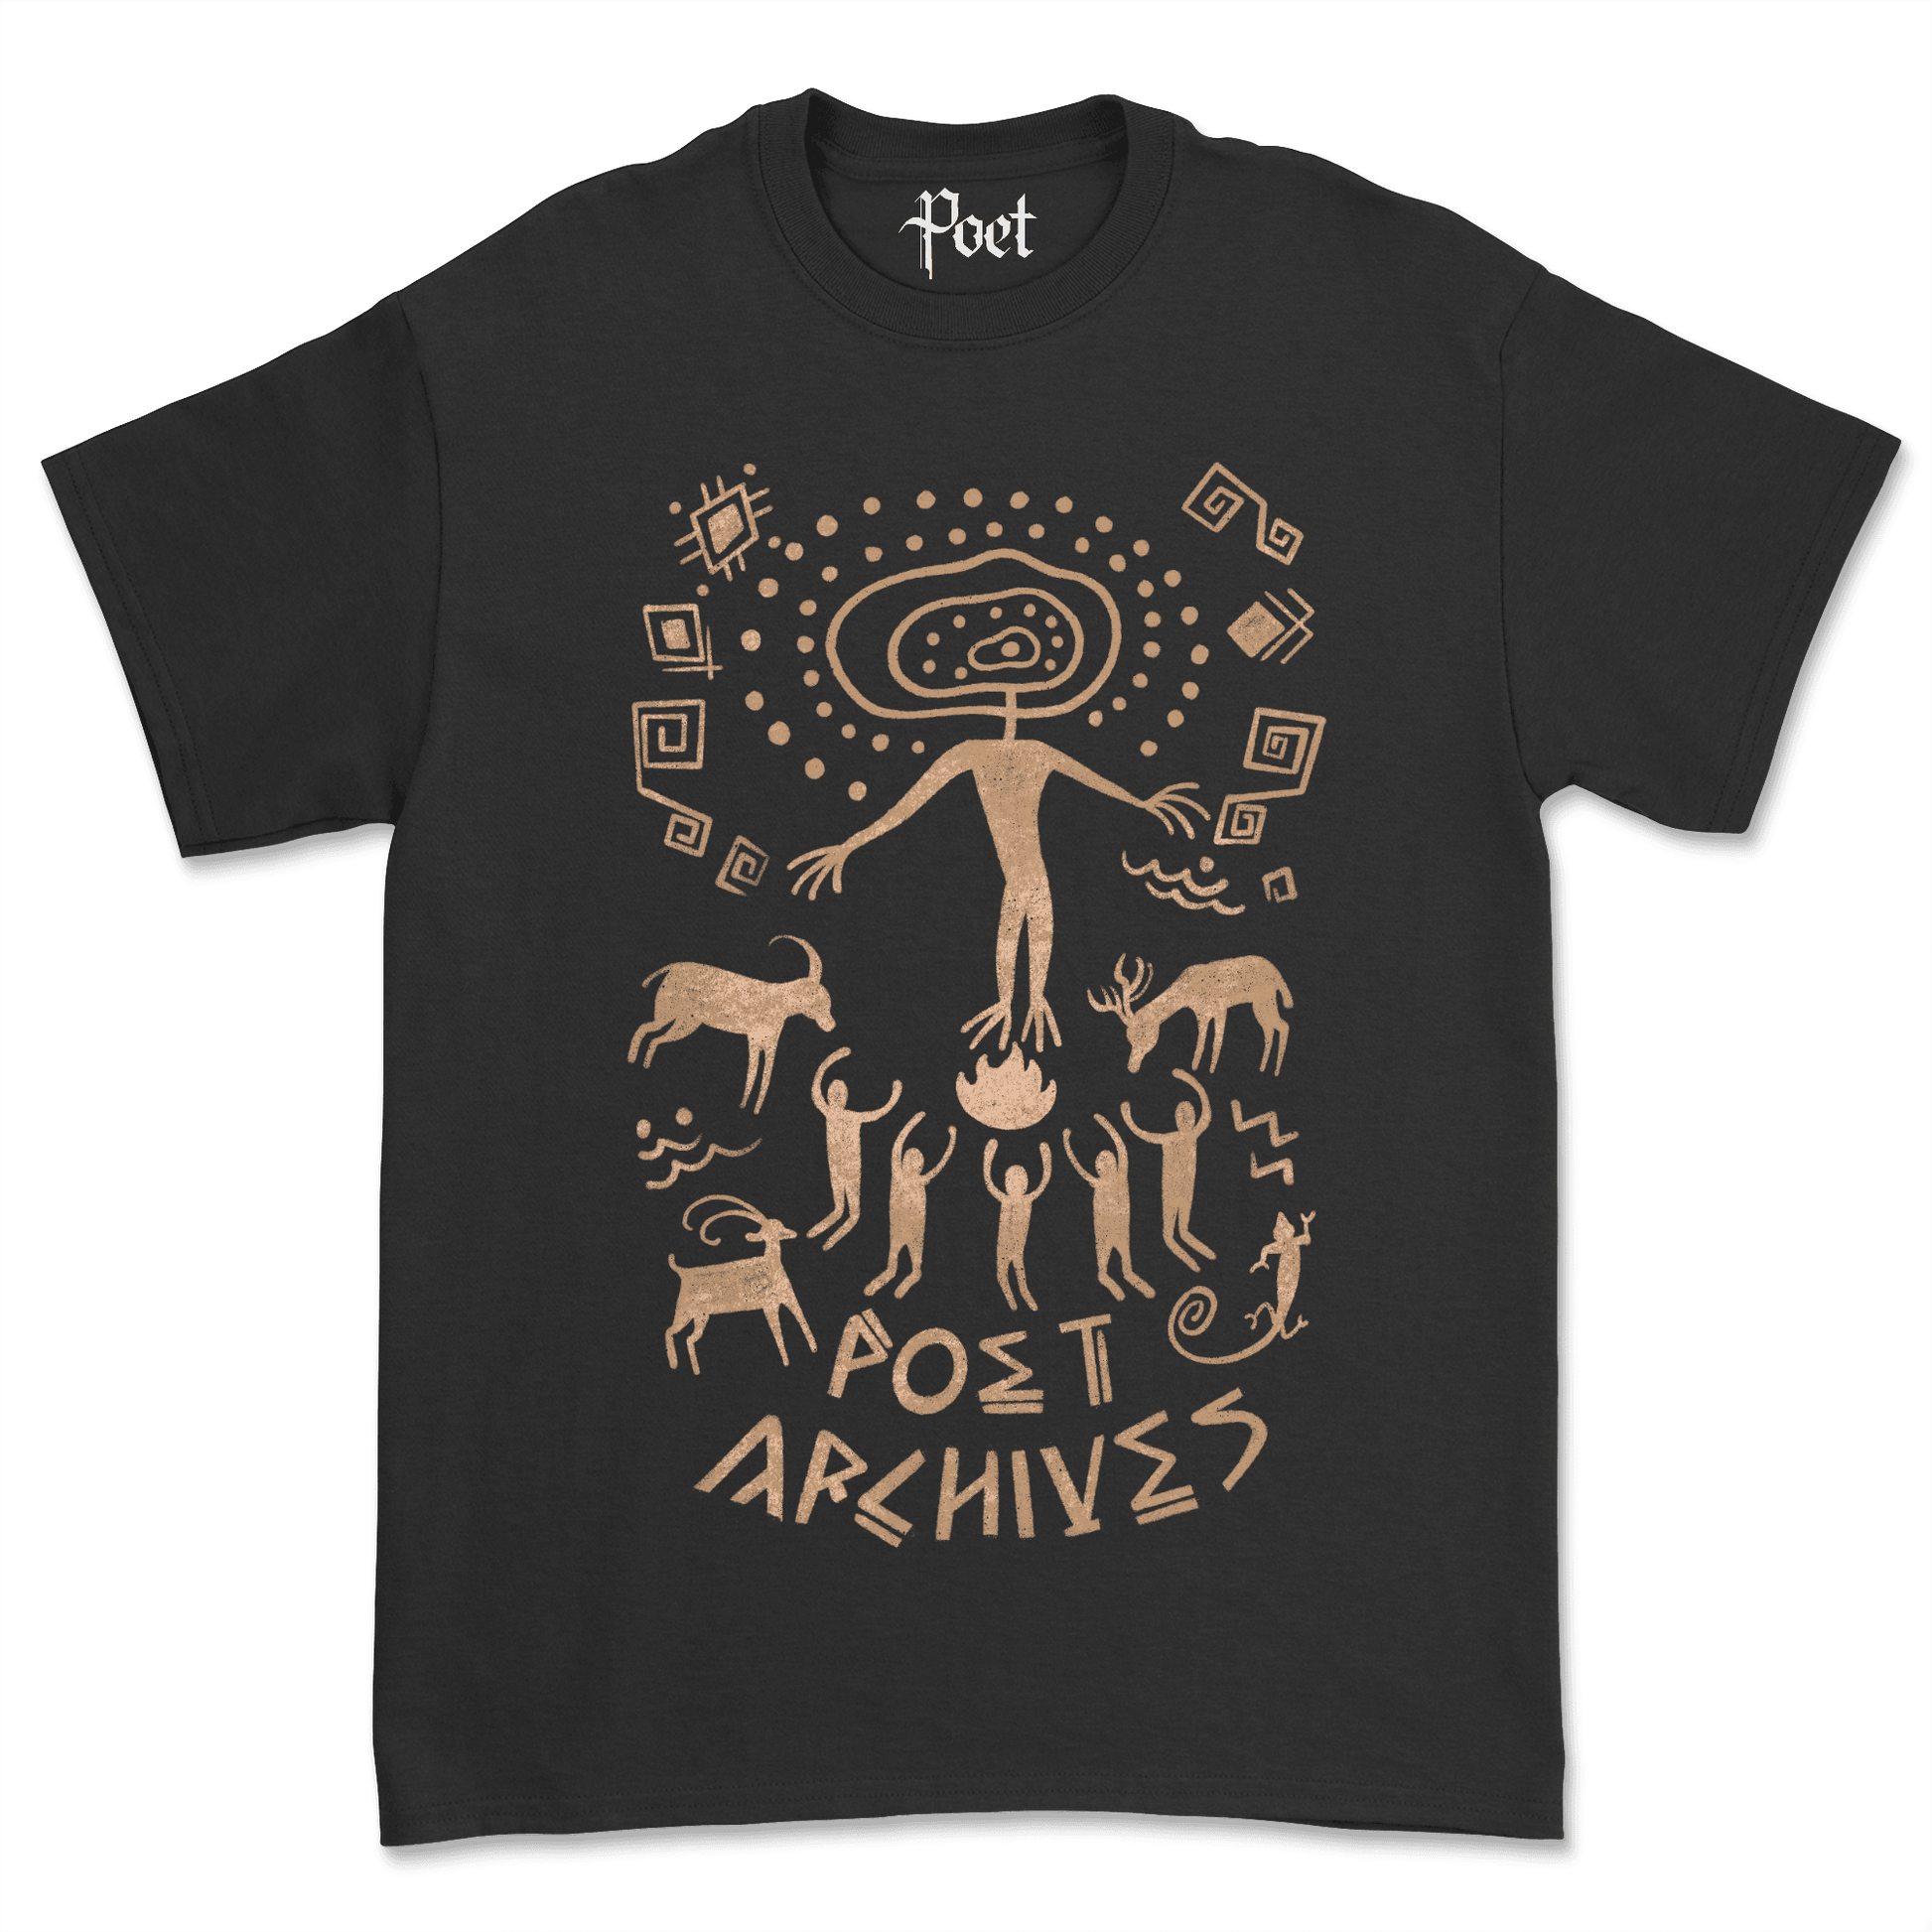 Cave Art T-Shirt - Poet Archives